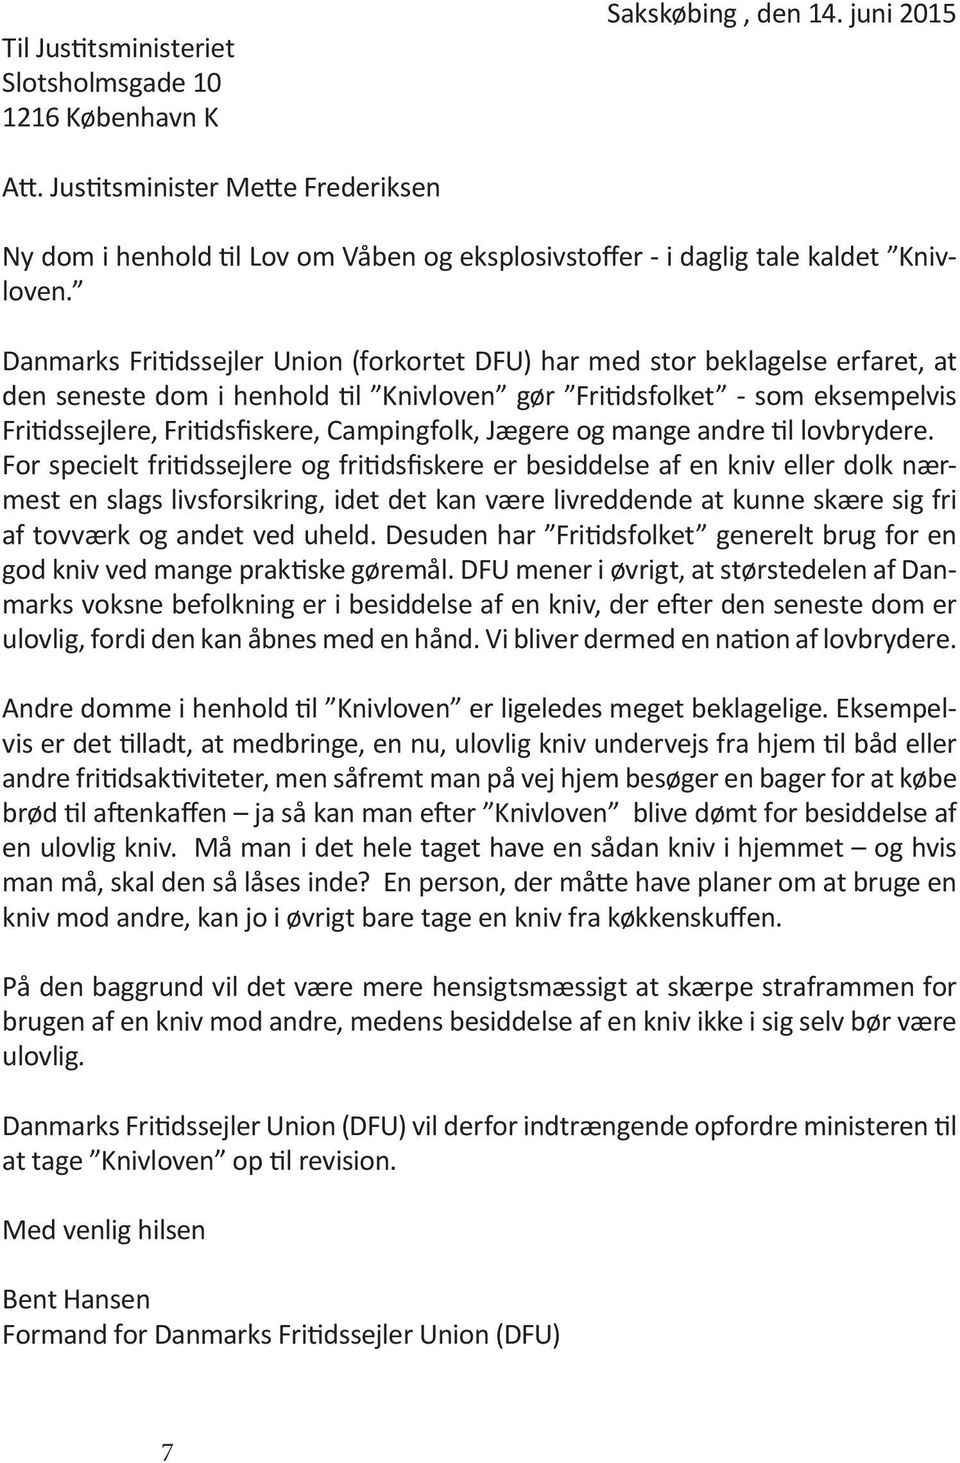 Danmarks Fritidssejler Union (forkortet DFU) har med stor beklagelse erfaret, at den seneste dom i henhold til Knivloven gør Fritidsfolket - som eksempelvis Fritidssejlere, Fritidsfiskere,